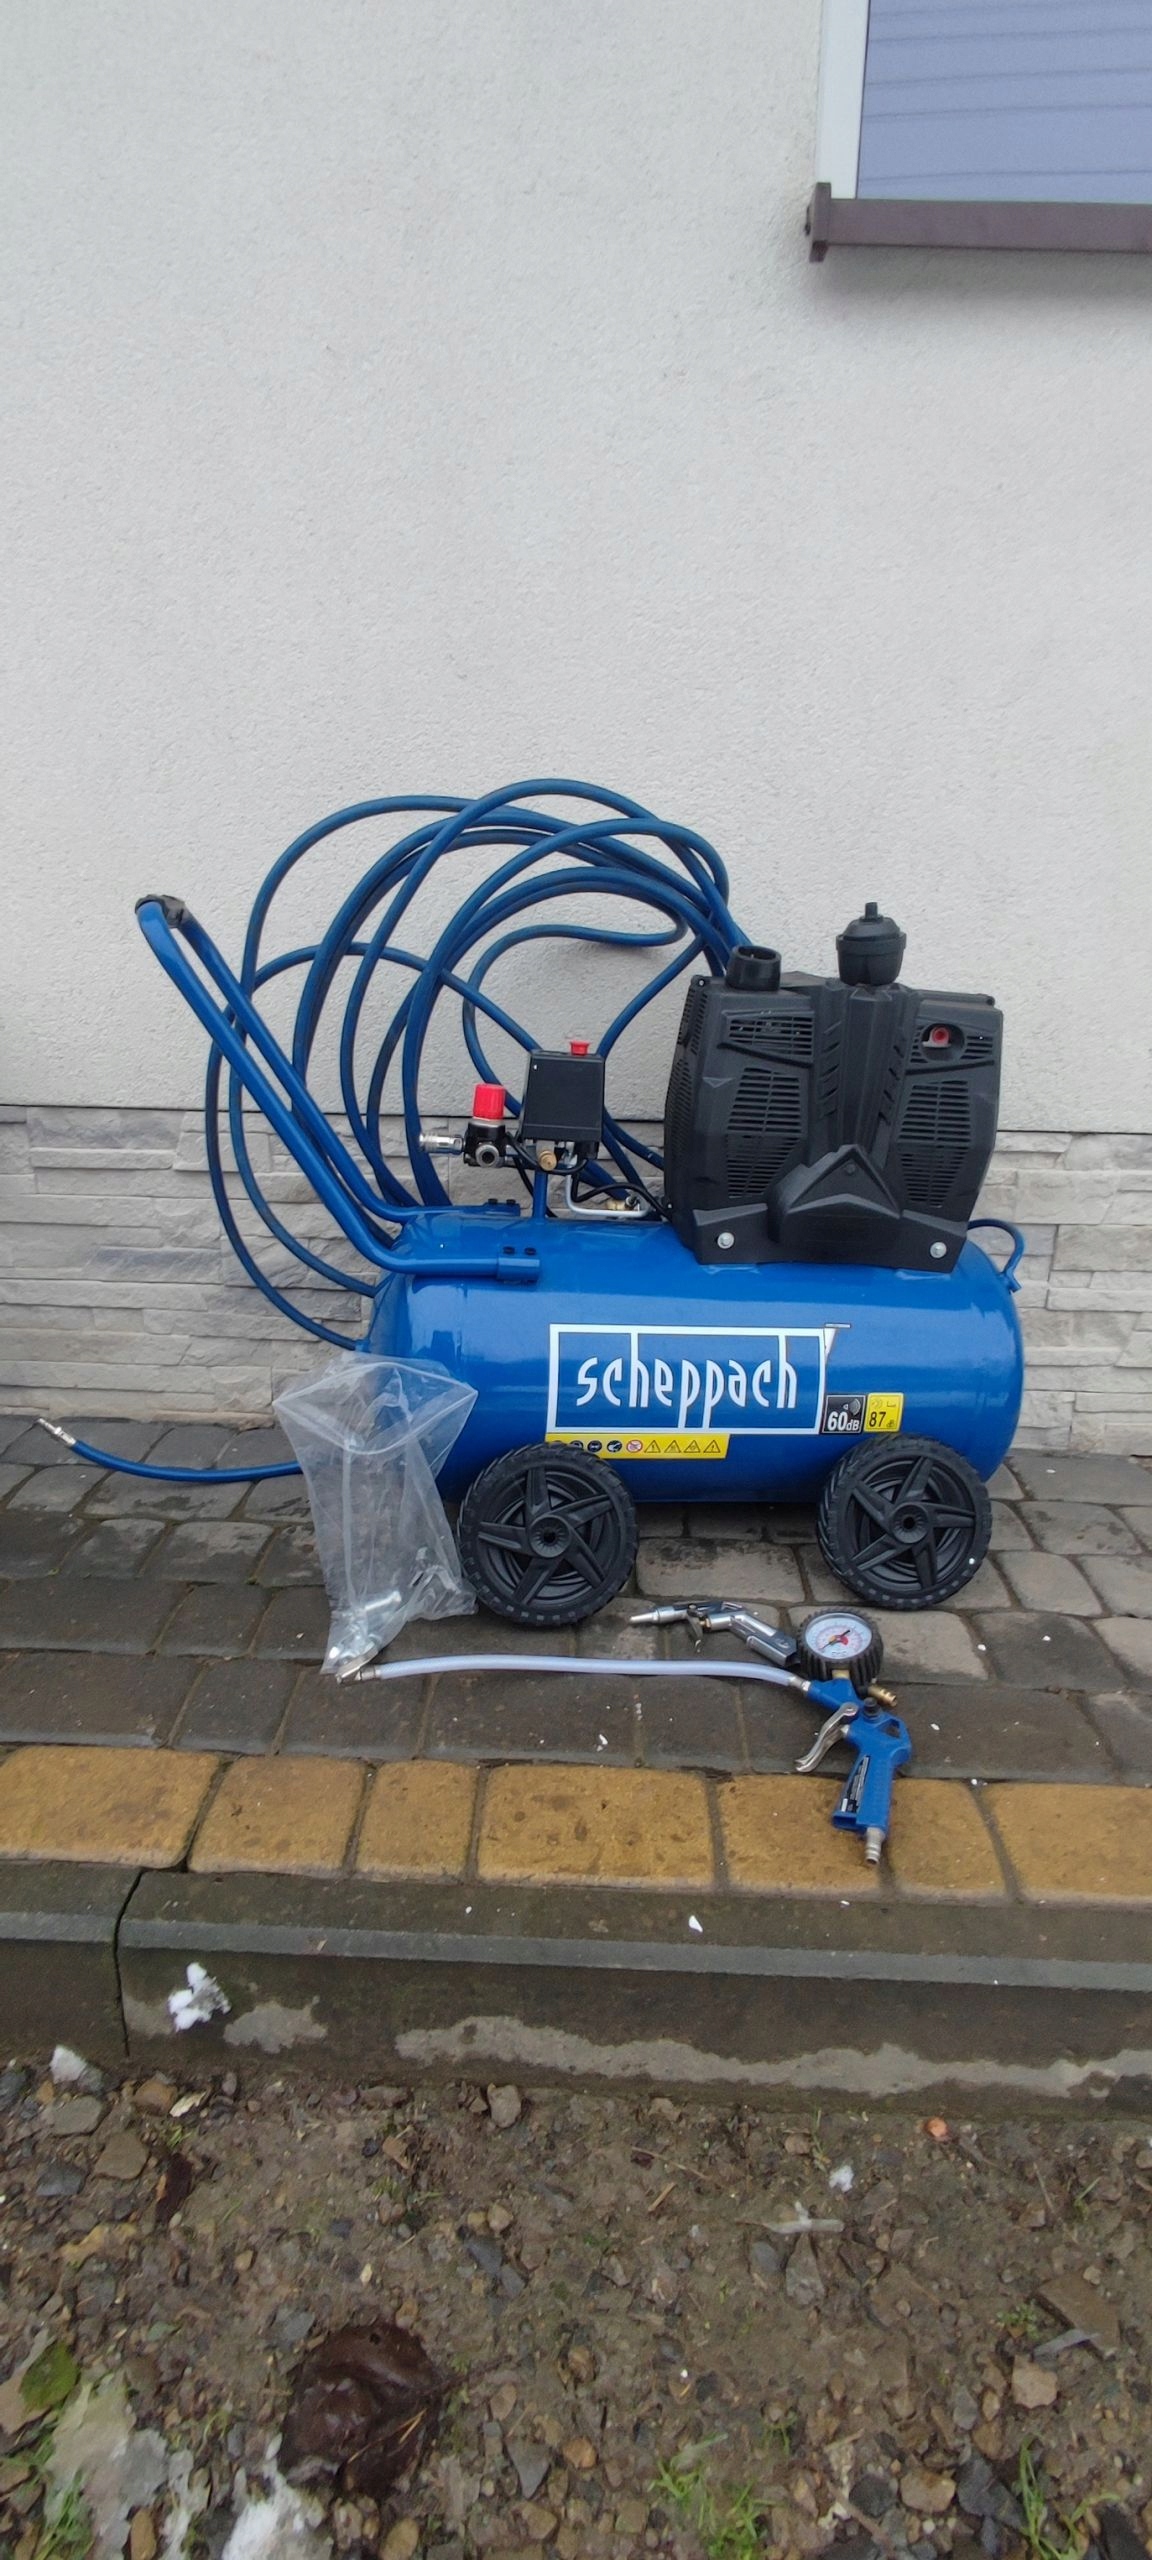 Scheppach 5906141901 HC51Si Super Silent Kompressor 50L